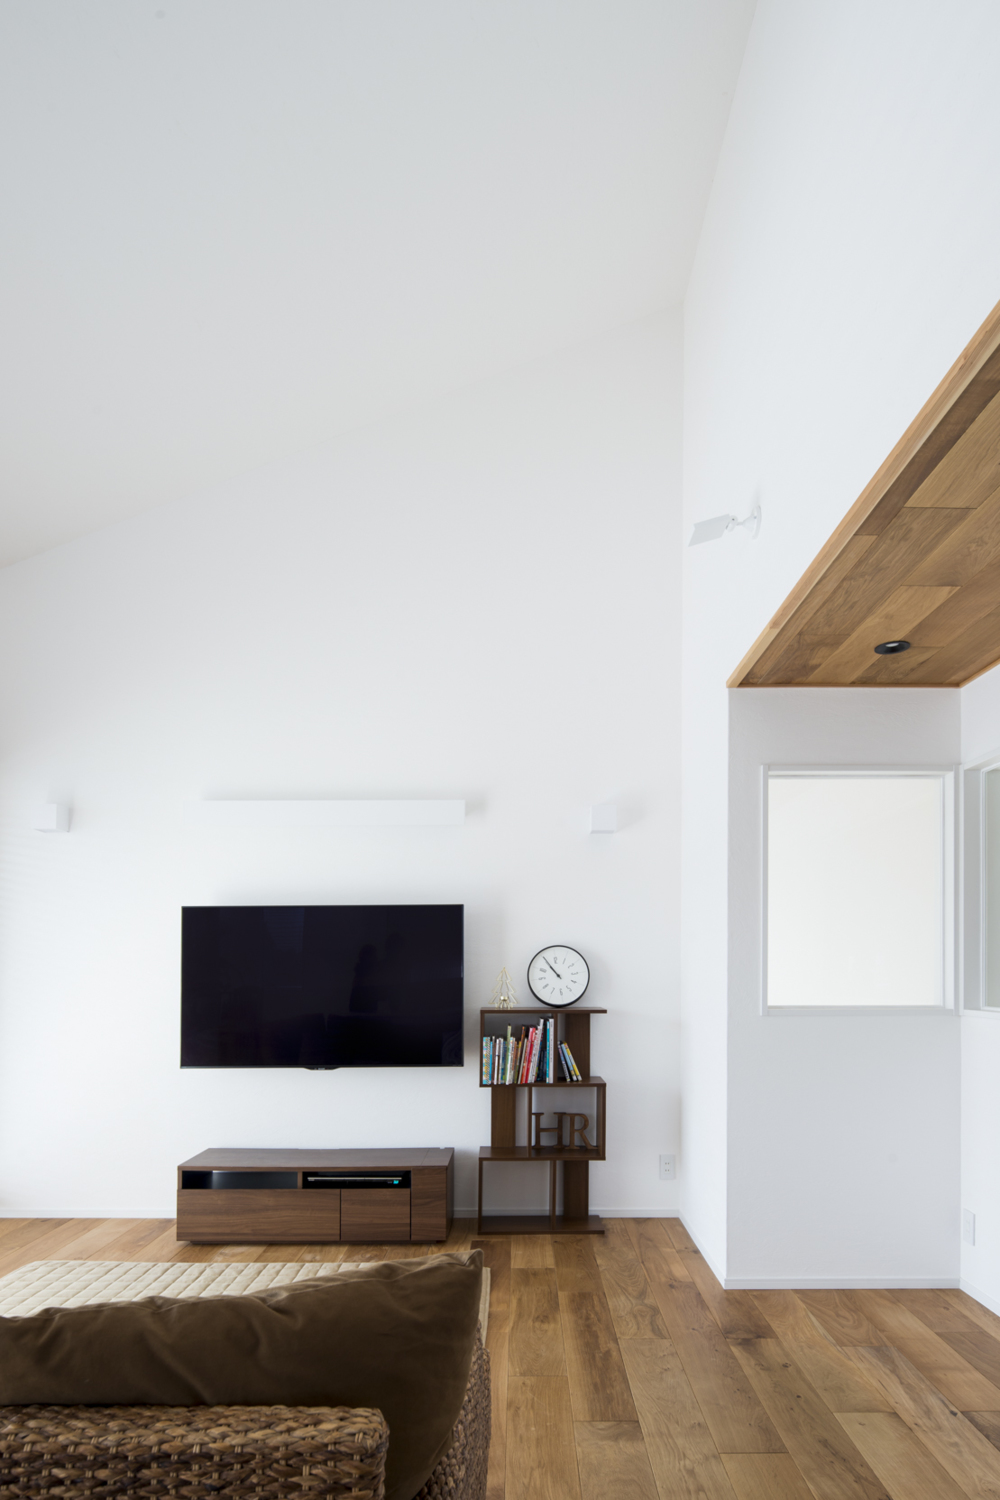 天井の板貼りは、フロアと同材のオークを採用。部屋全体に一体感が生まれます。